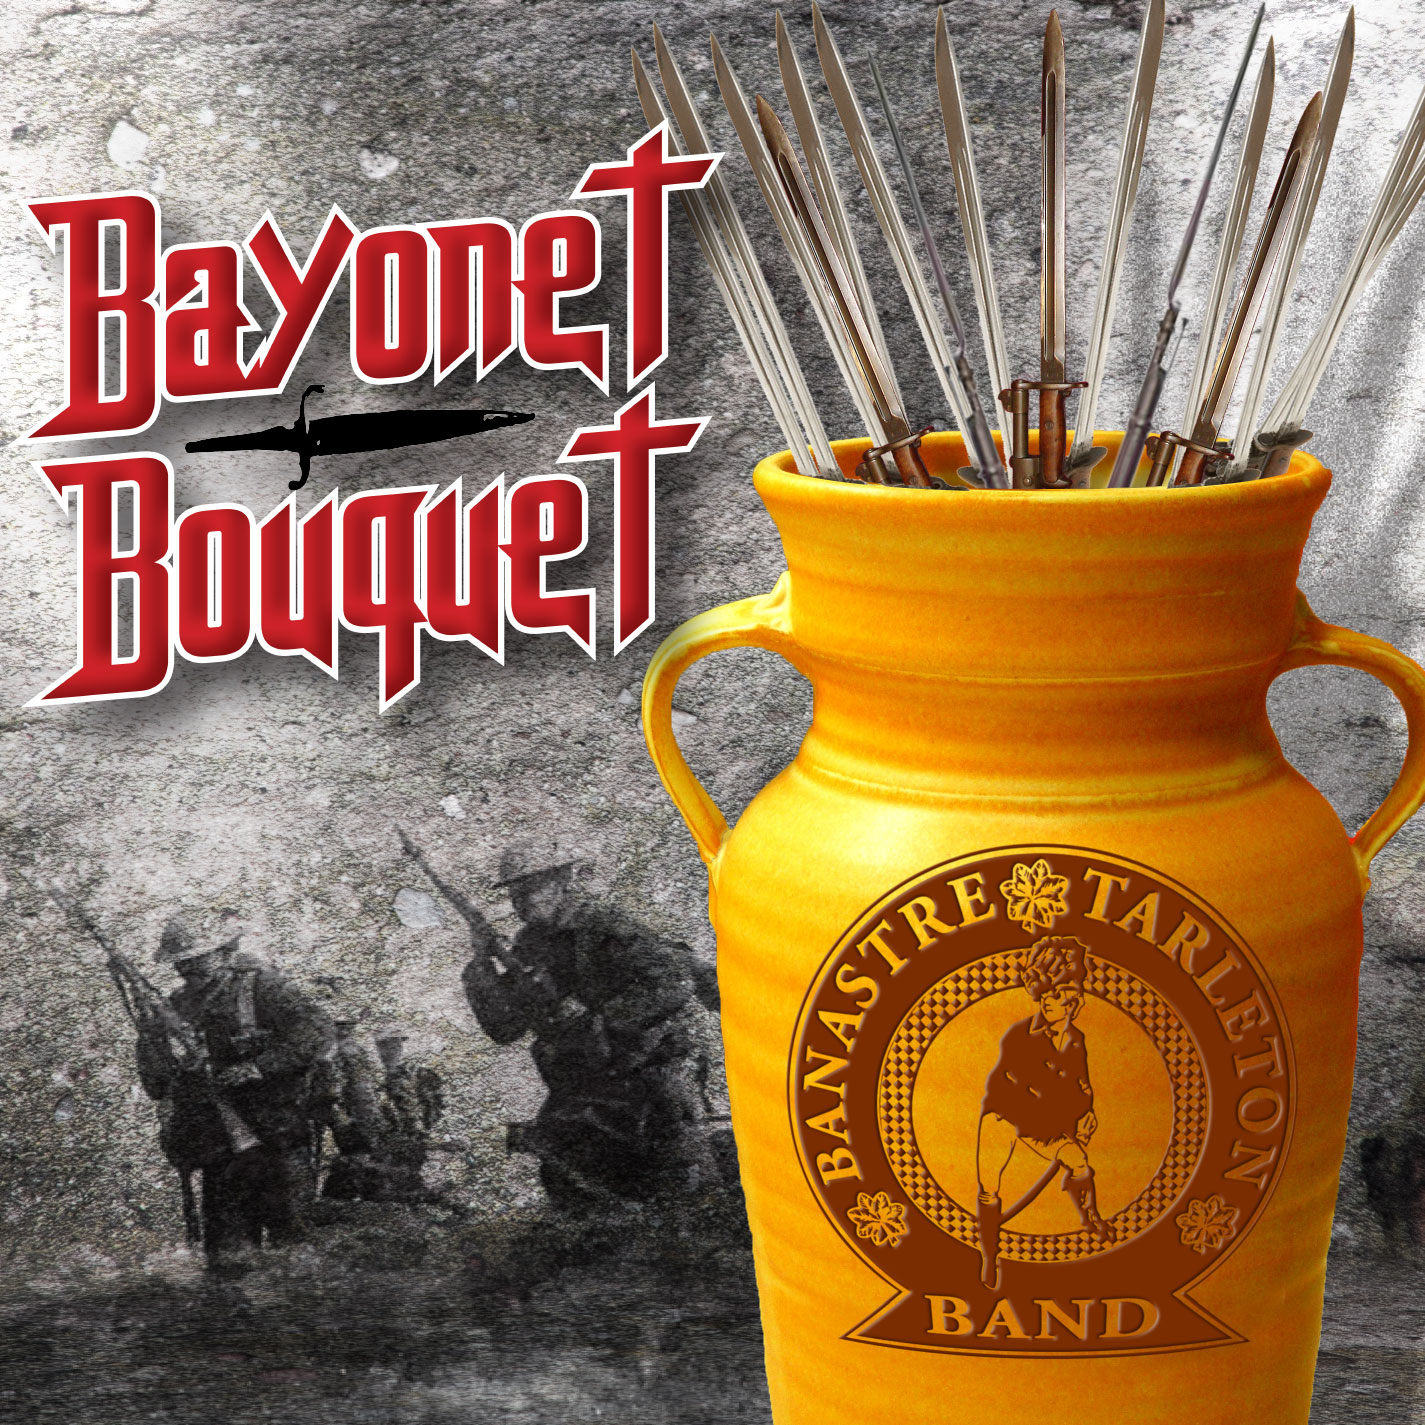 Bayonet Bouquet